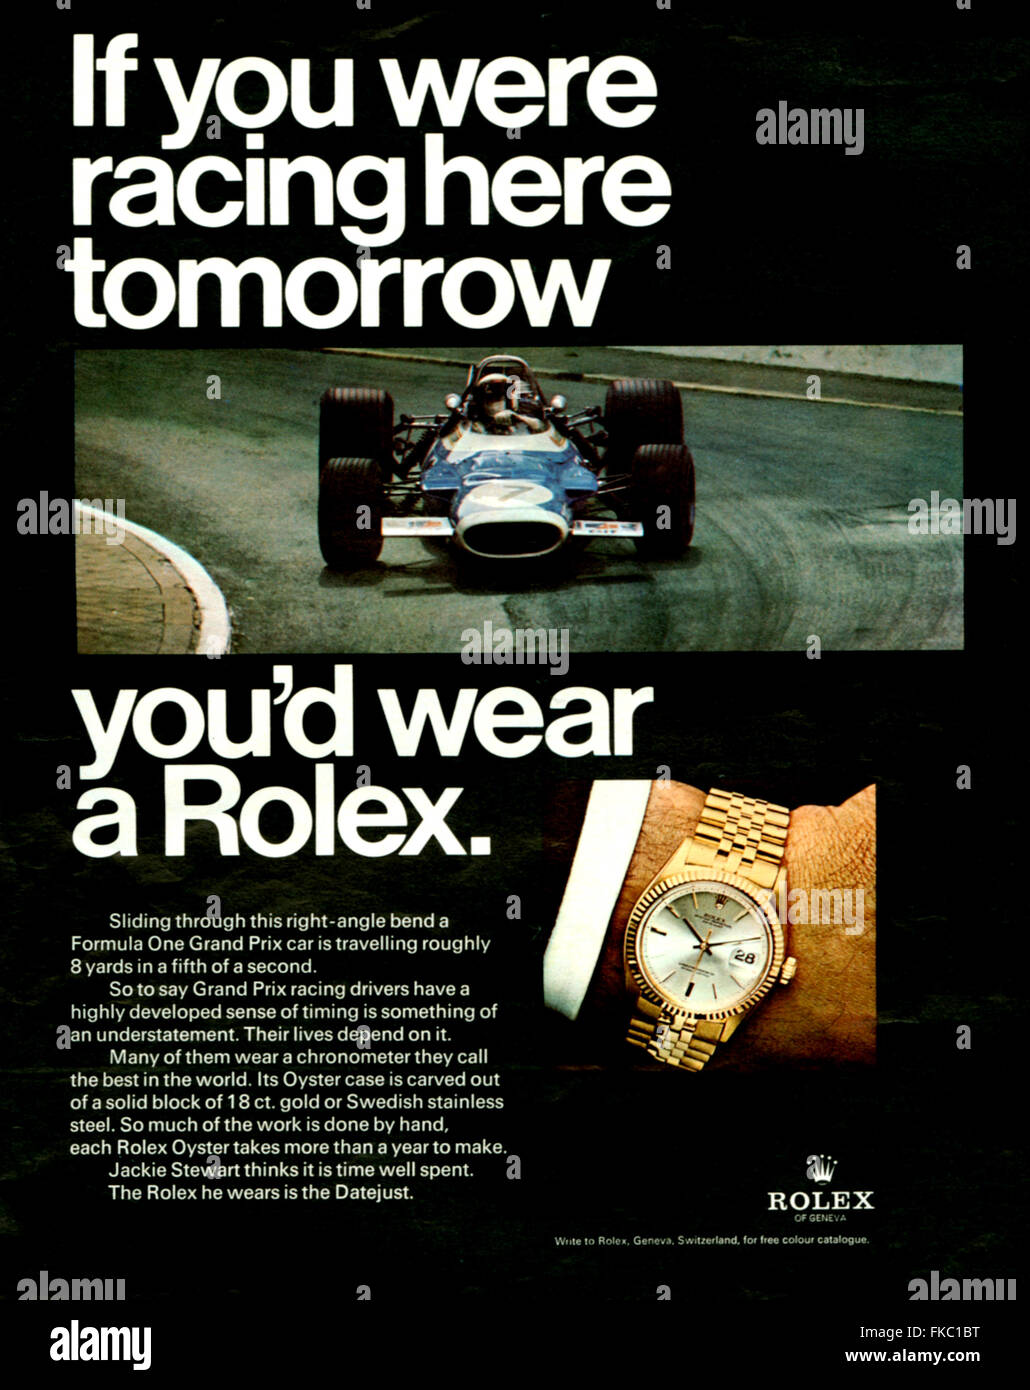 1960er Jahren USA Rolex Magazin Anzeige Stockfotografie - Alamy